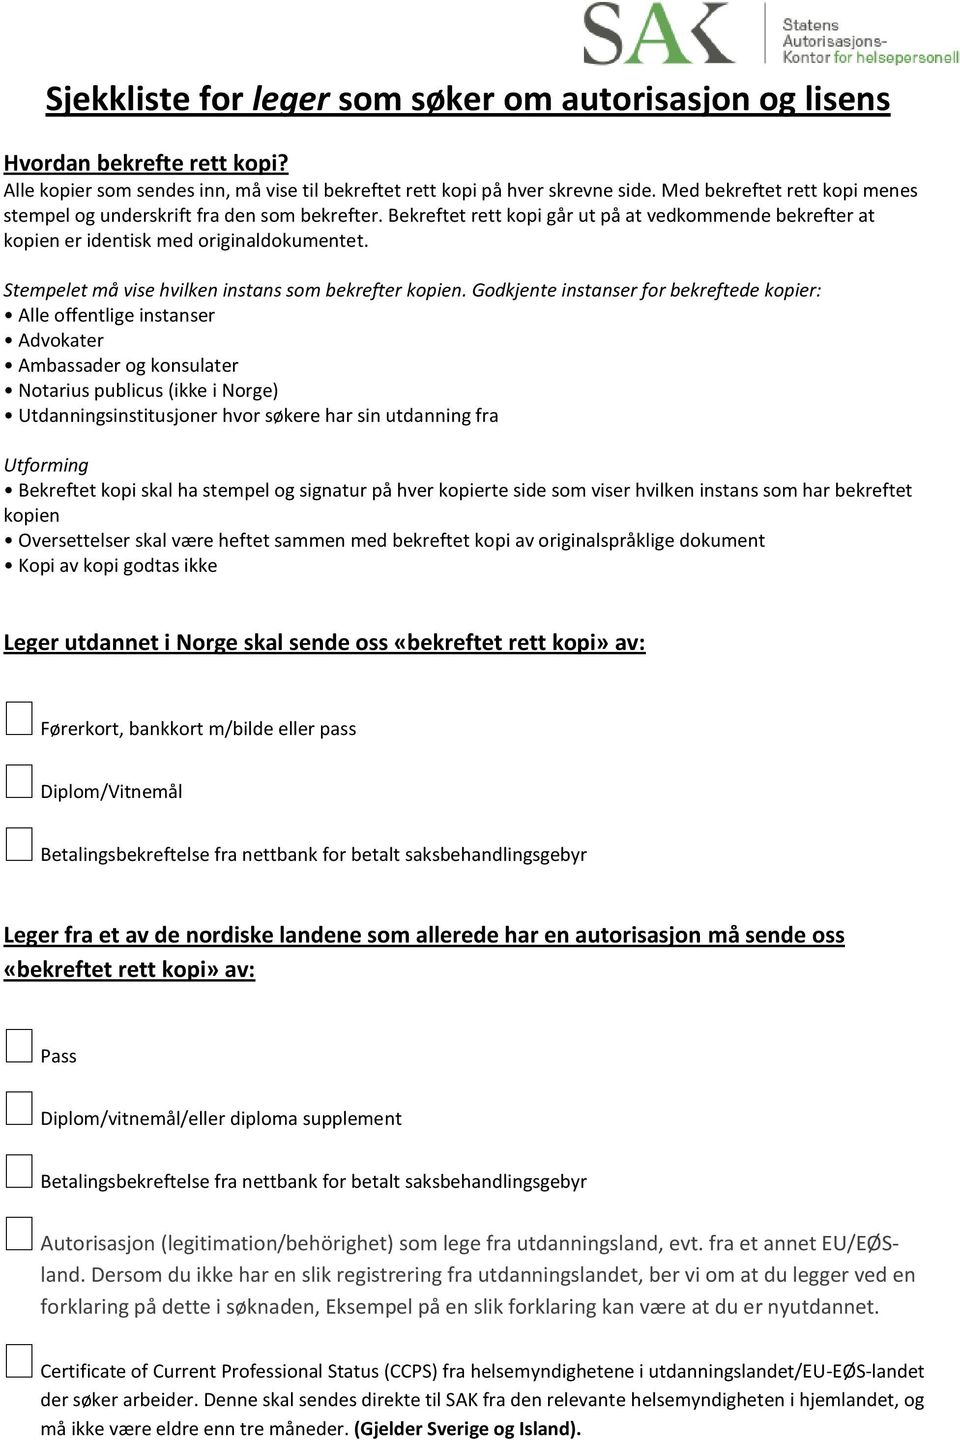 Sjekkliste for leger som søker om autorisasjon og lisens - PDF Free Download